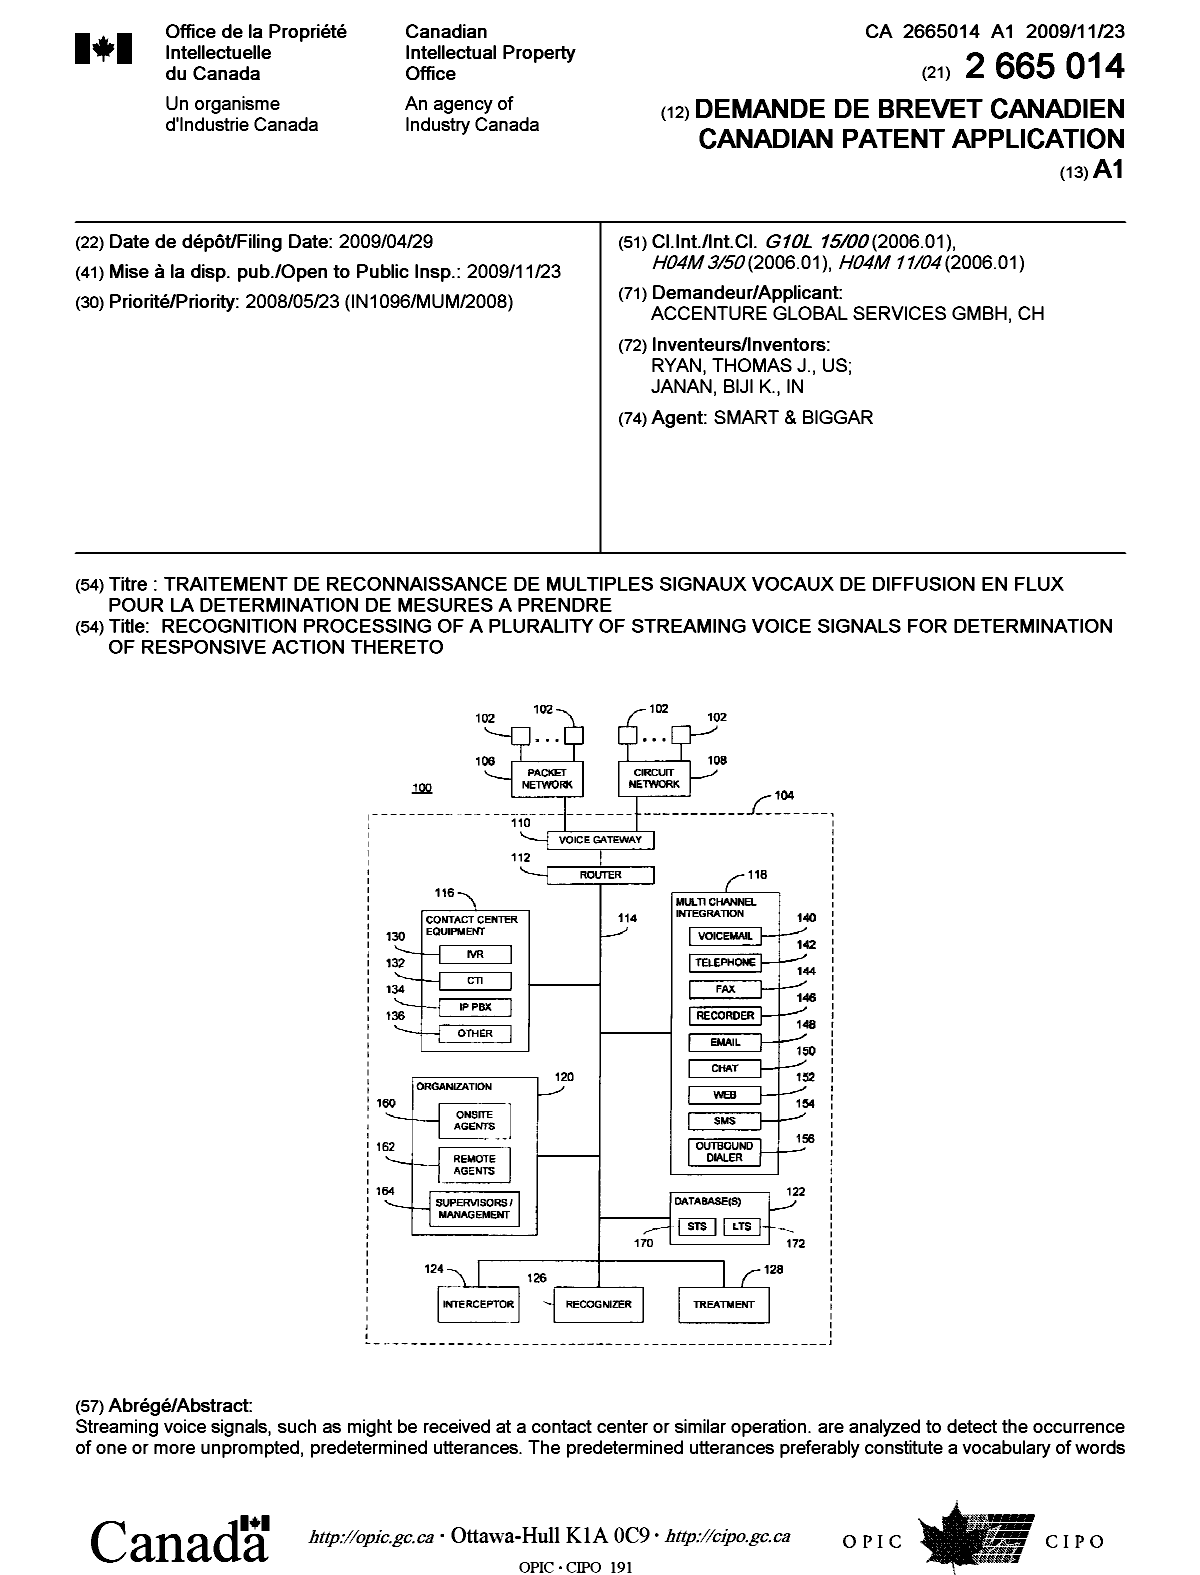 Document de brevet canadien 2665014. Page couverture 20091117. Image 1 de 2